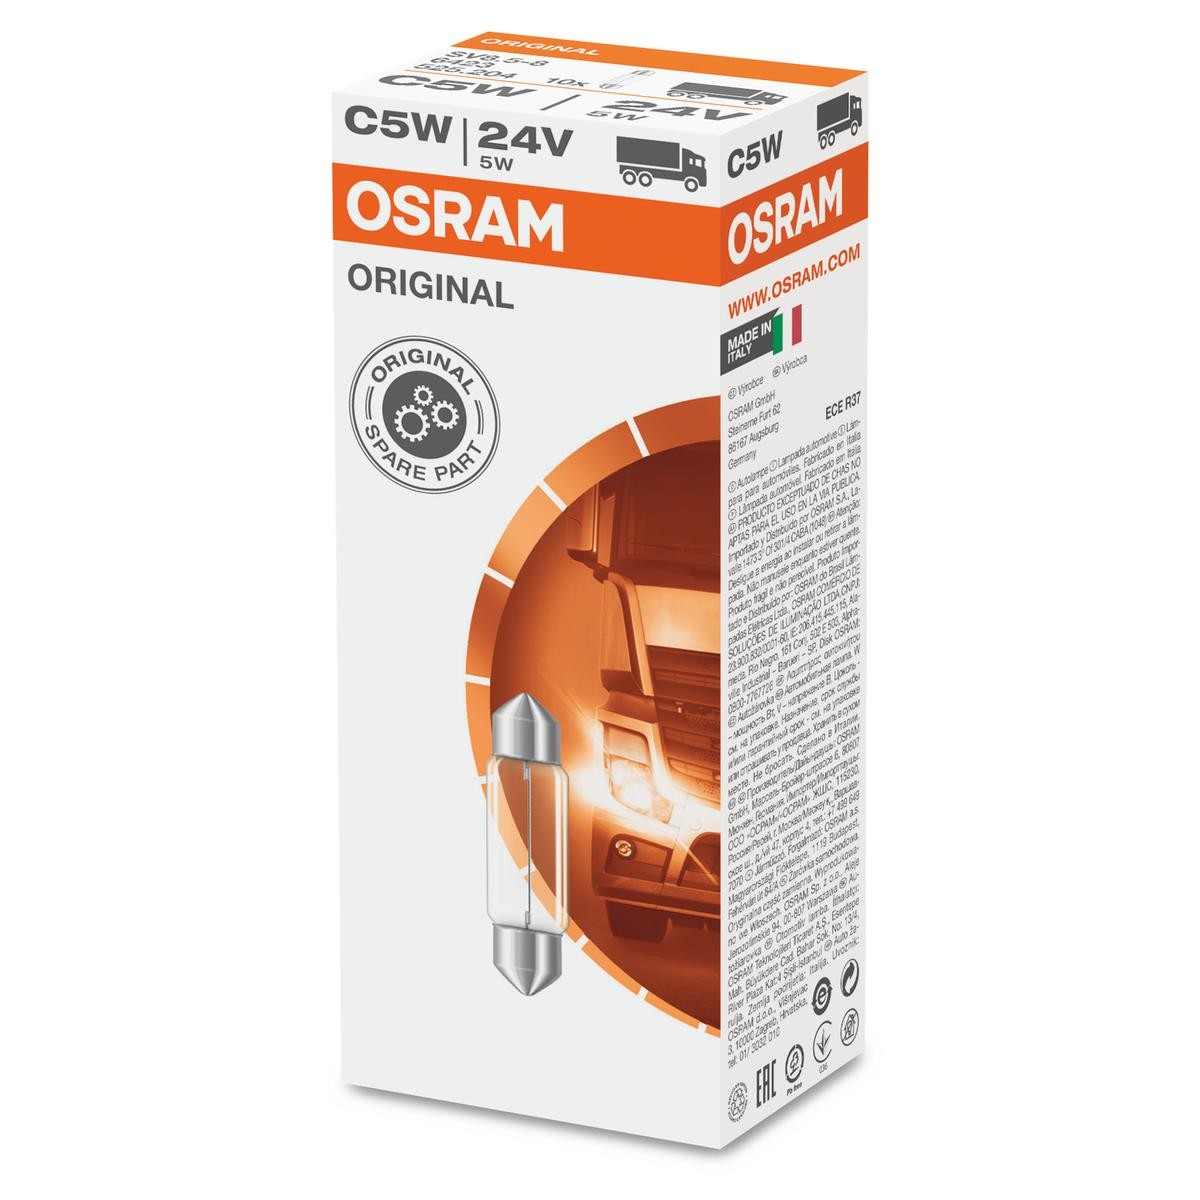 6423 OSRAM Number plate light BMW 24V 5W, C5W, SV8.5-8